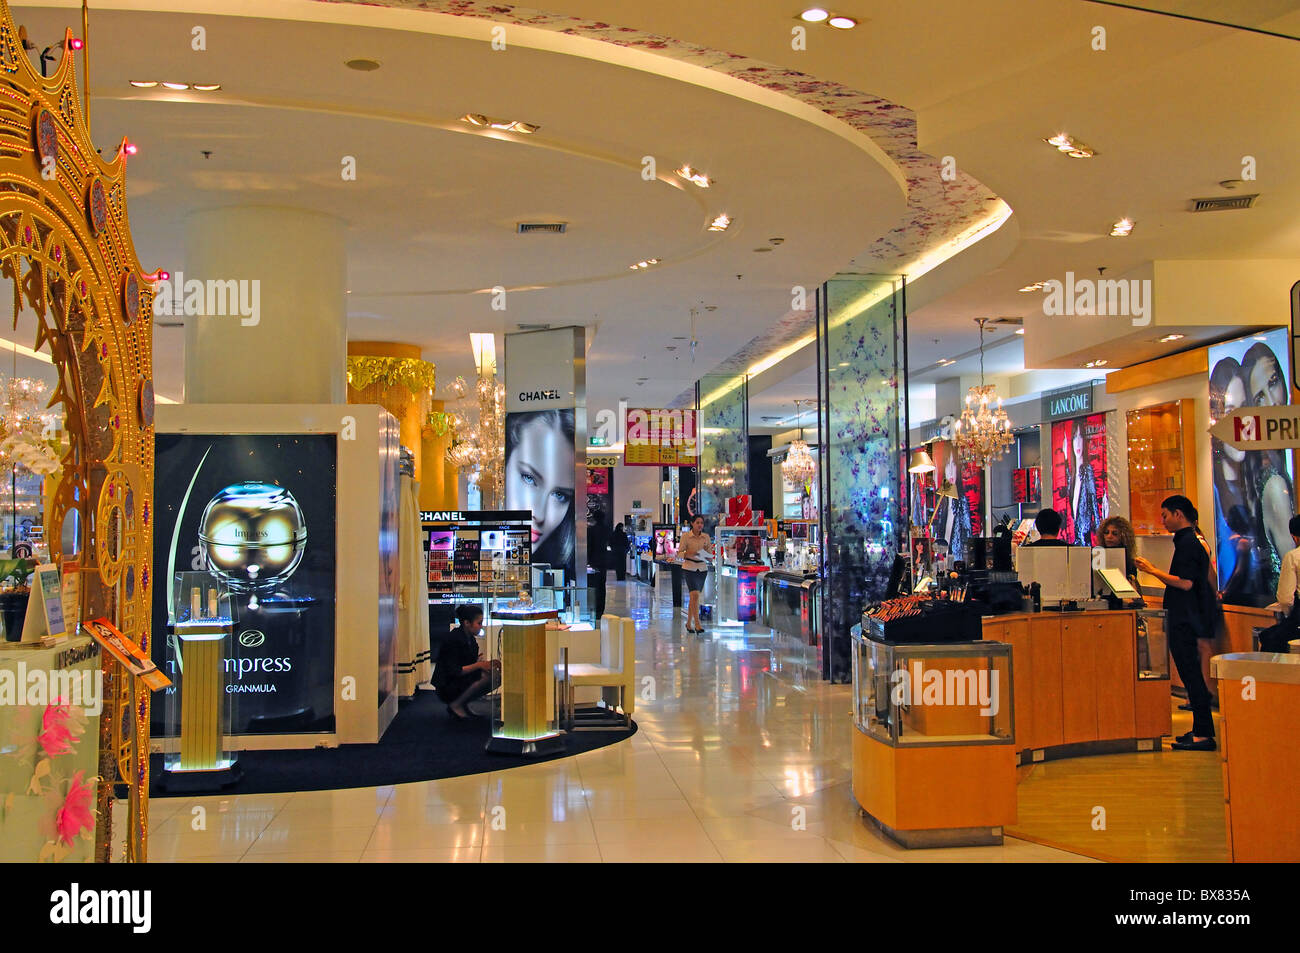 Thailand bangkok emporium shopping mall hi-res stock photography